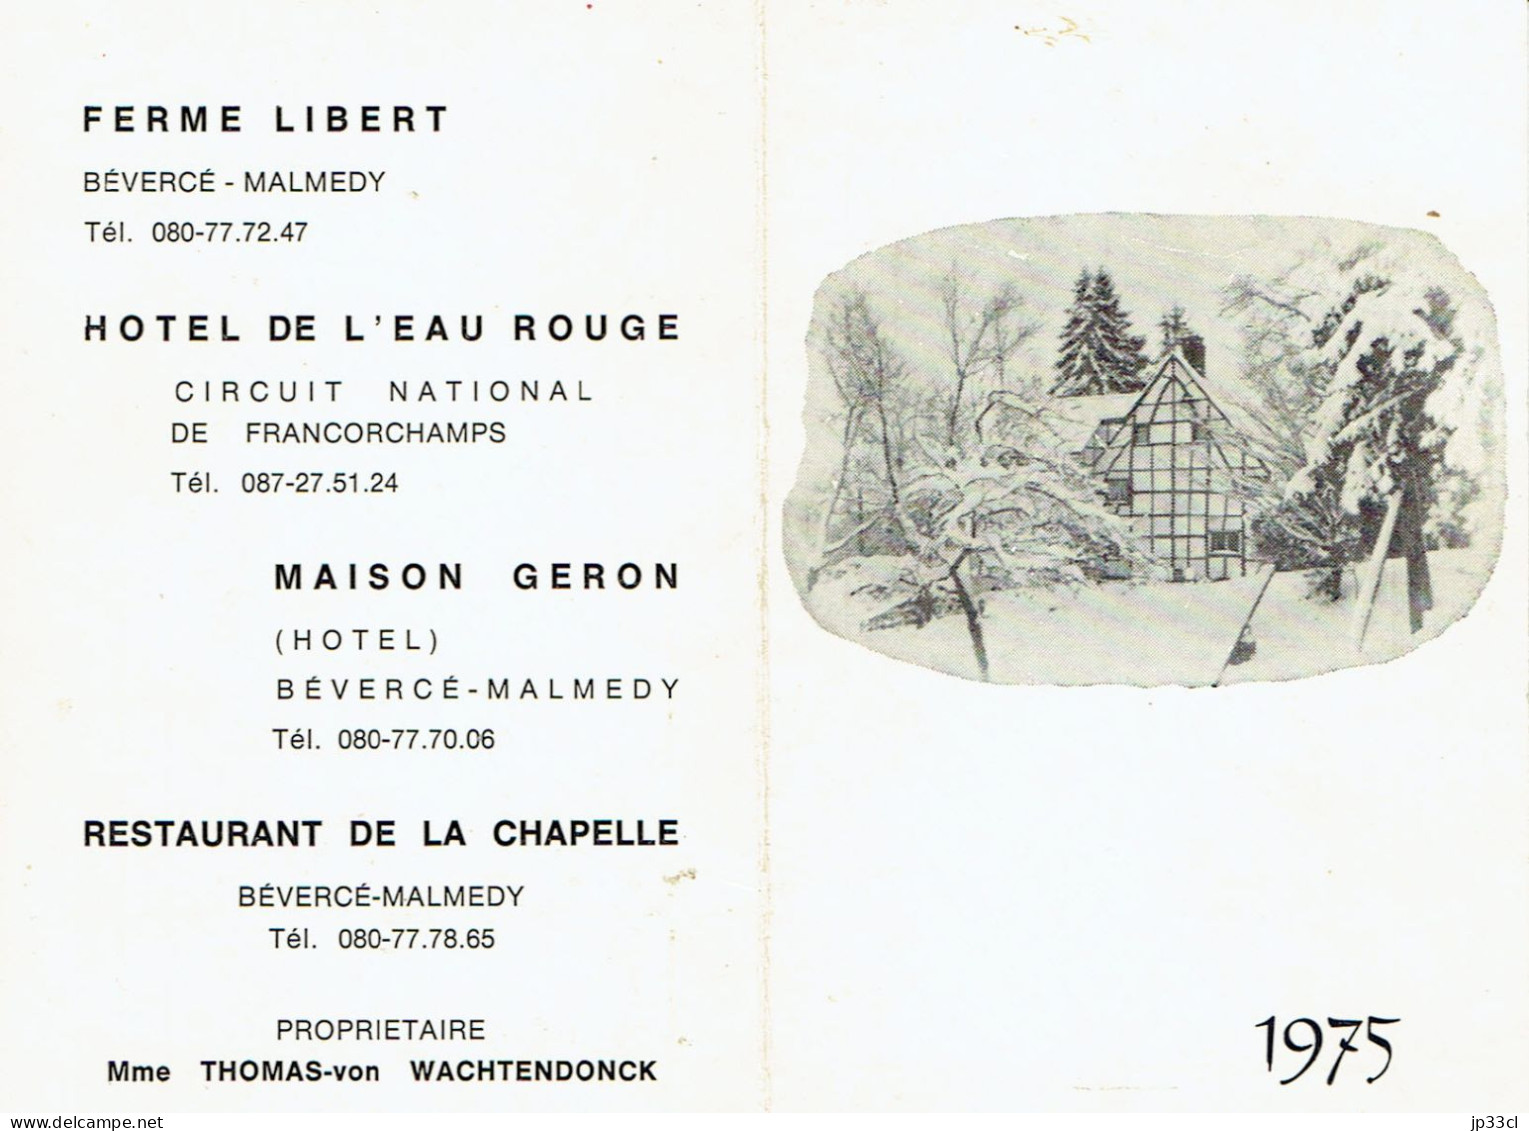 Calendrier 1975 Ferme Libert, Hôtel De L'Eau Rouge (Francorchamps), Maison Geron, Etc. Bevercée-Malmedy - Klein Formaat: 1971-80